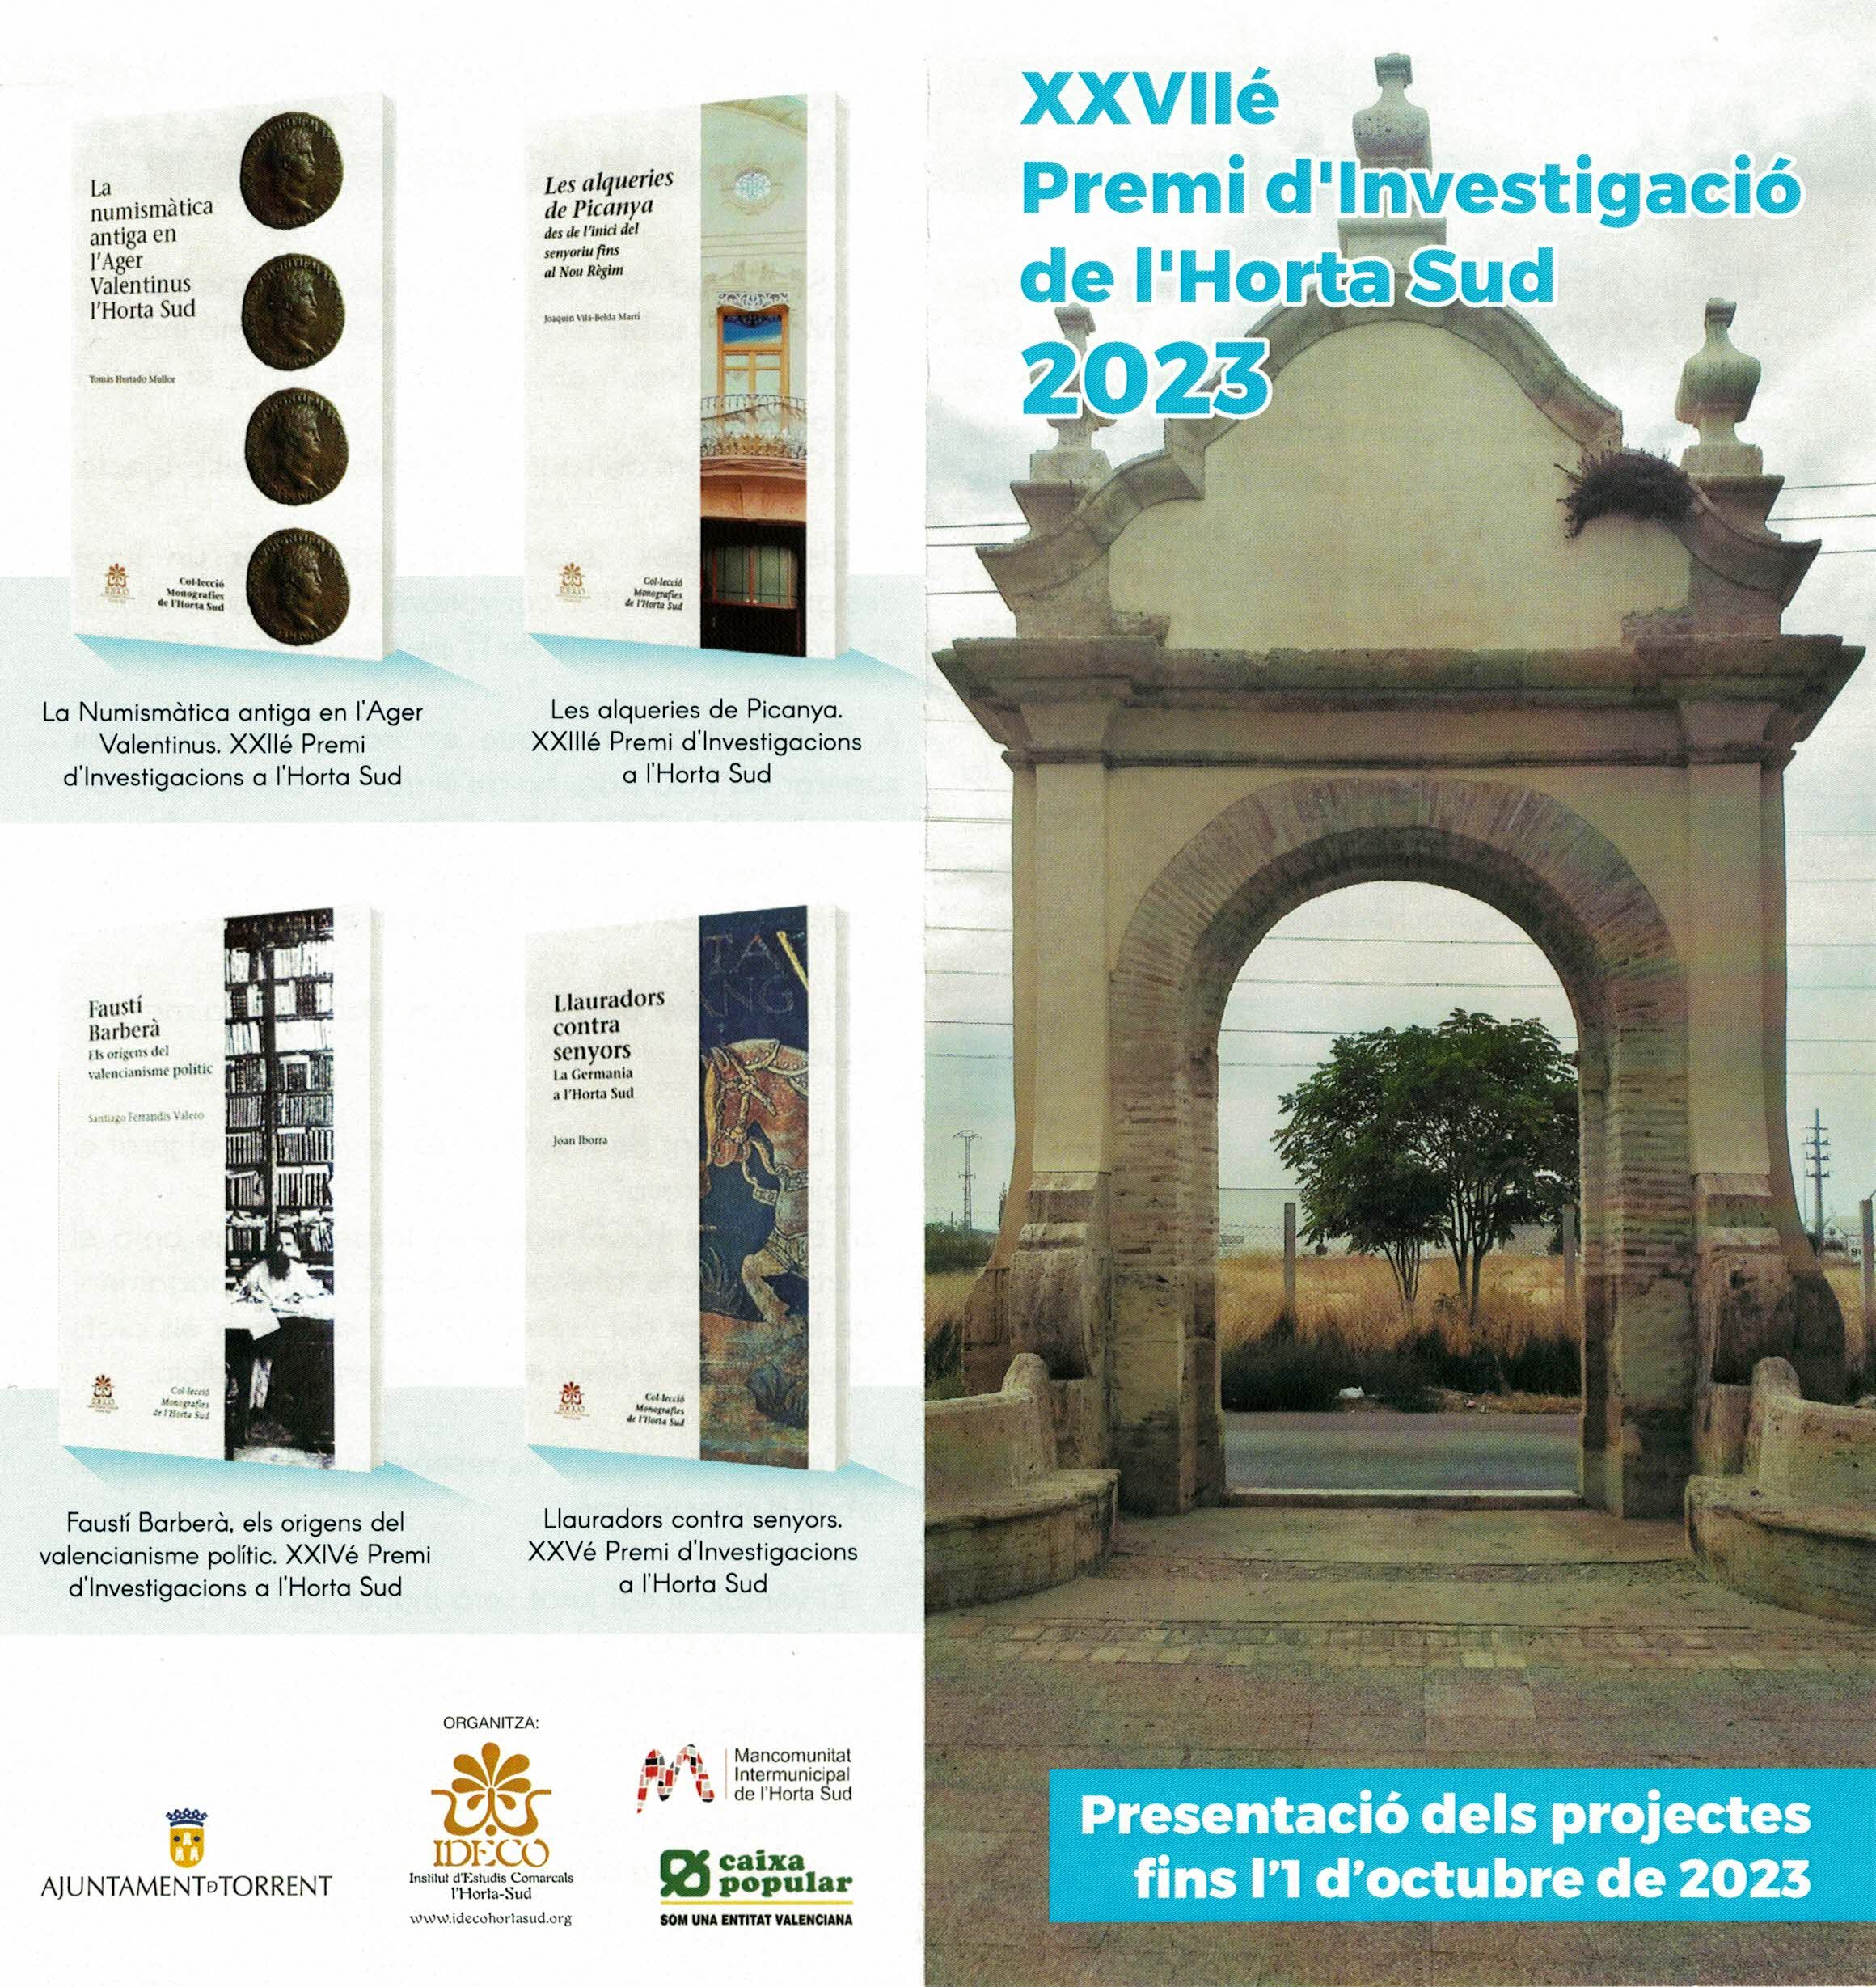 Es convoca el XXVIIé Premi d'Investigació de l'Horta Sud 2023